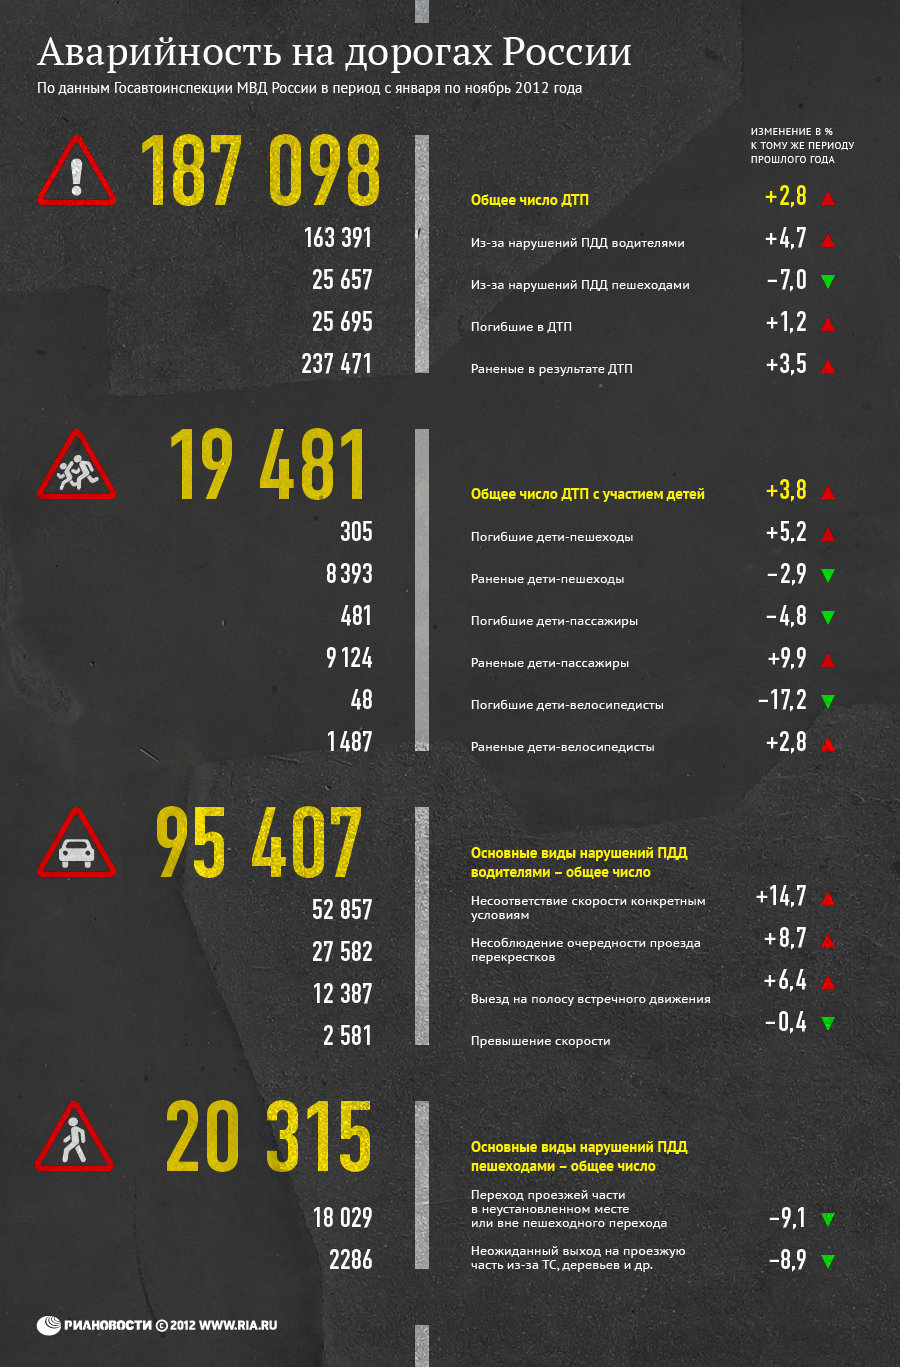 Аварийность на дорогах России: январь-ноябрь 2012 года